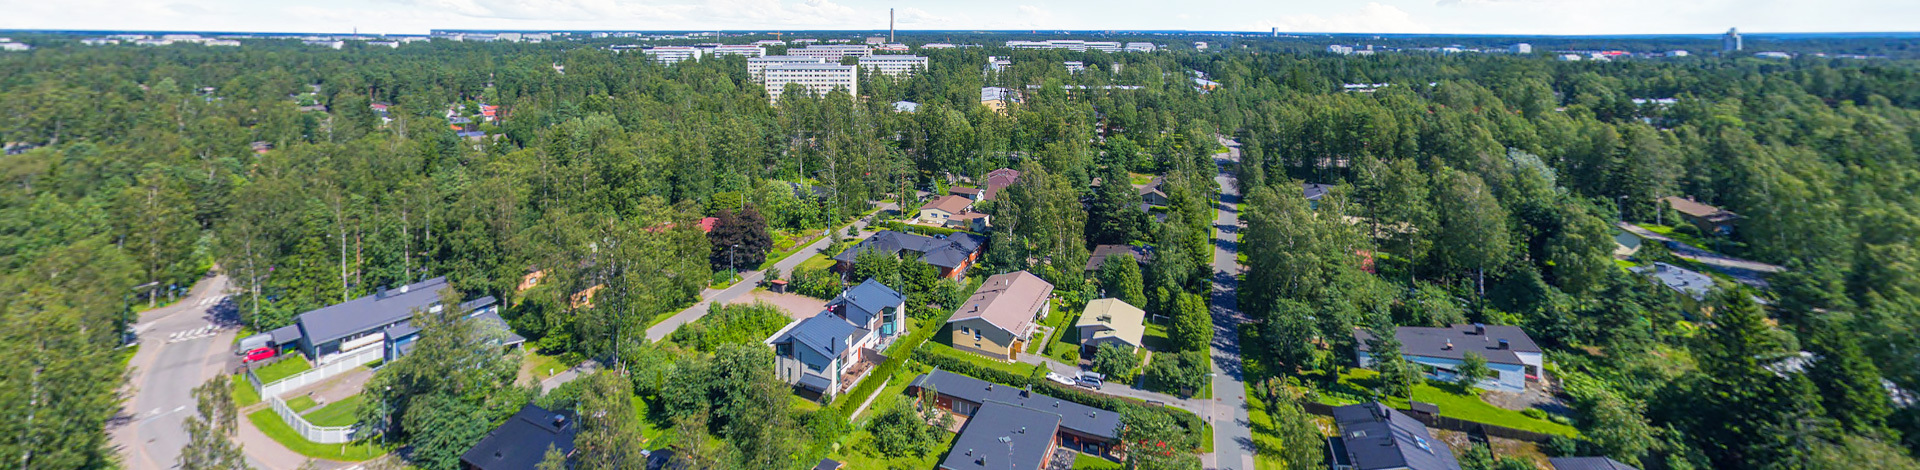 View of Myllypuro, Helsinki